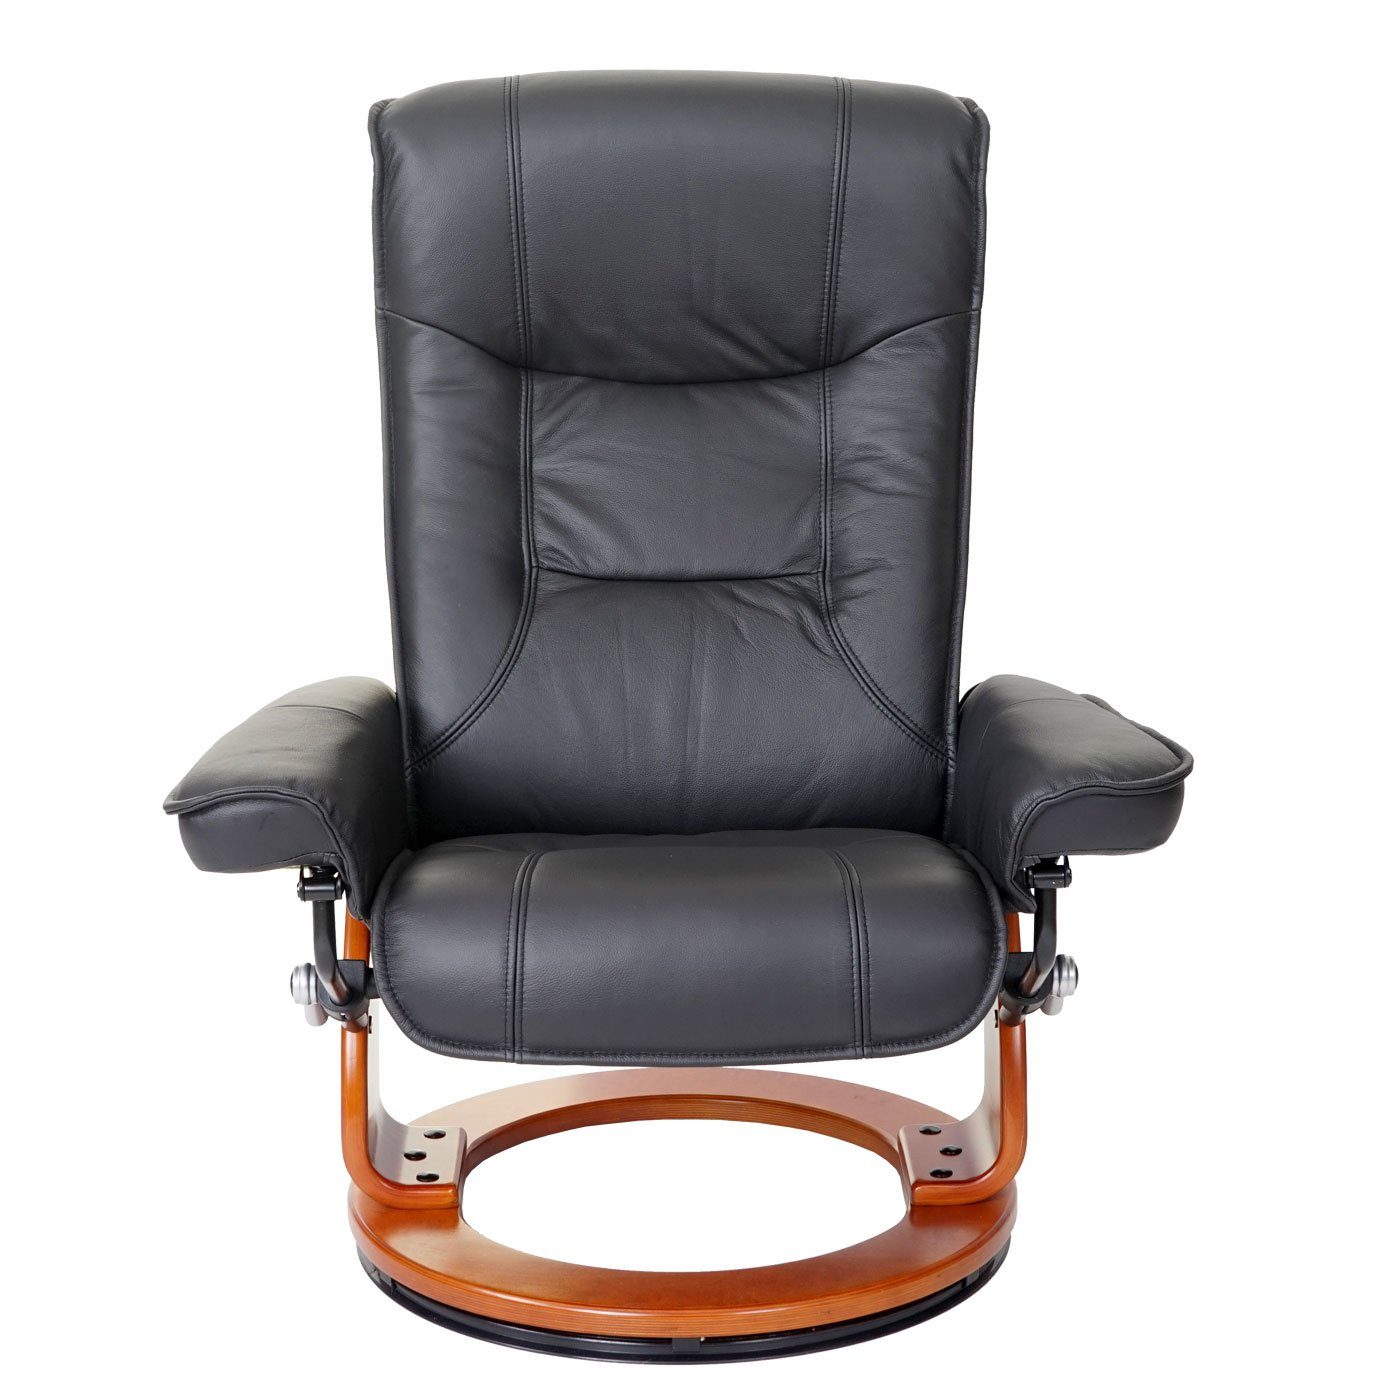 MCA furniture Relaxsessel Armlehne Halifax, inklusive Fußhocker, höhenverstellbar Polsterung, honigfarben dicke schwarz